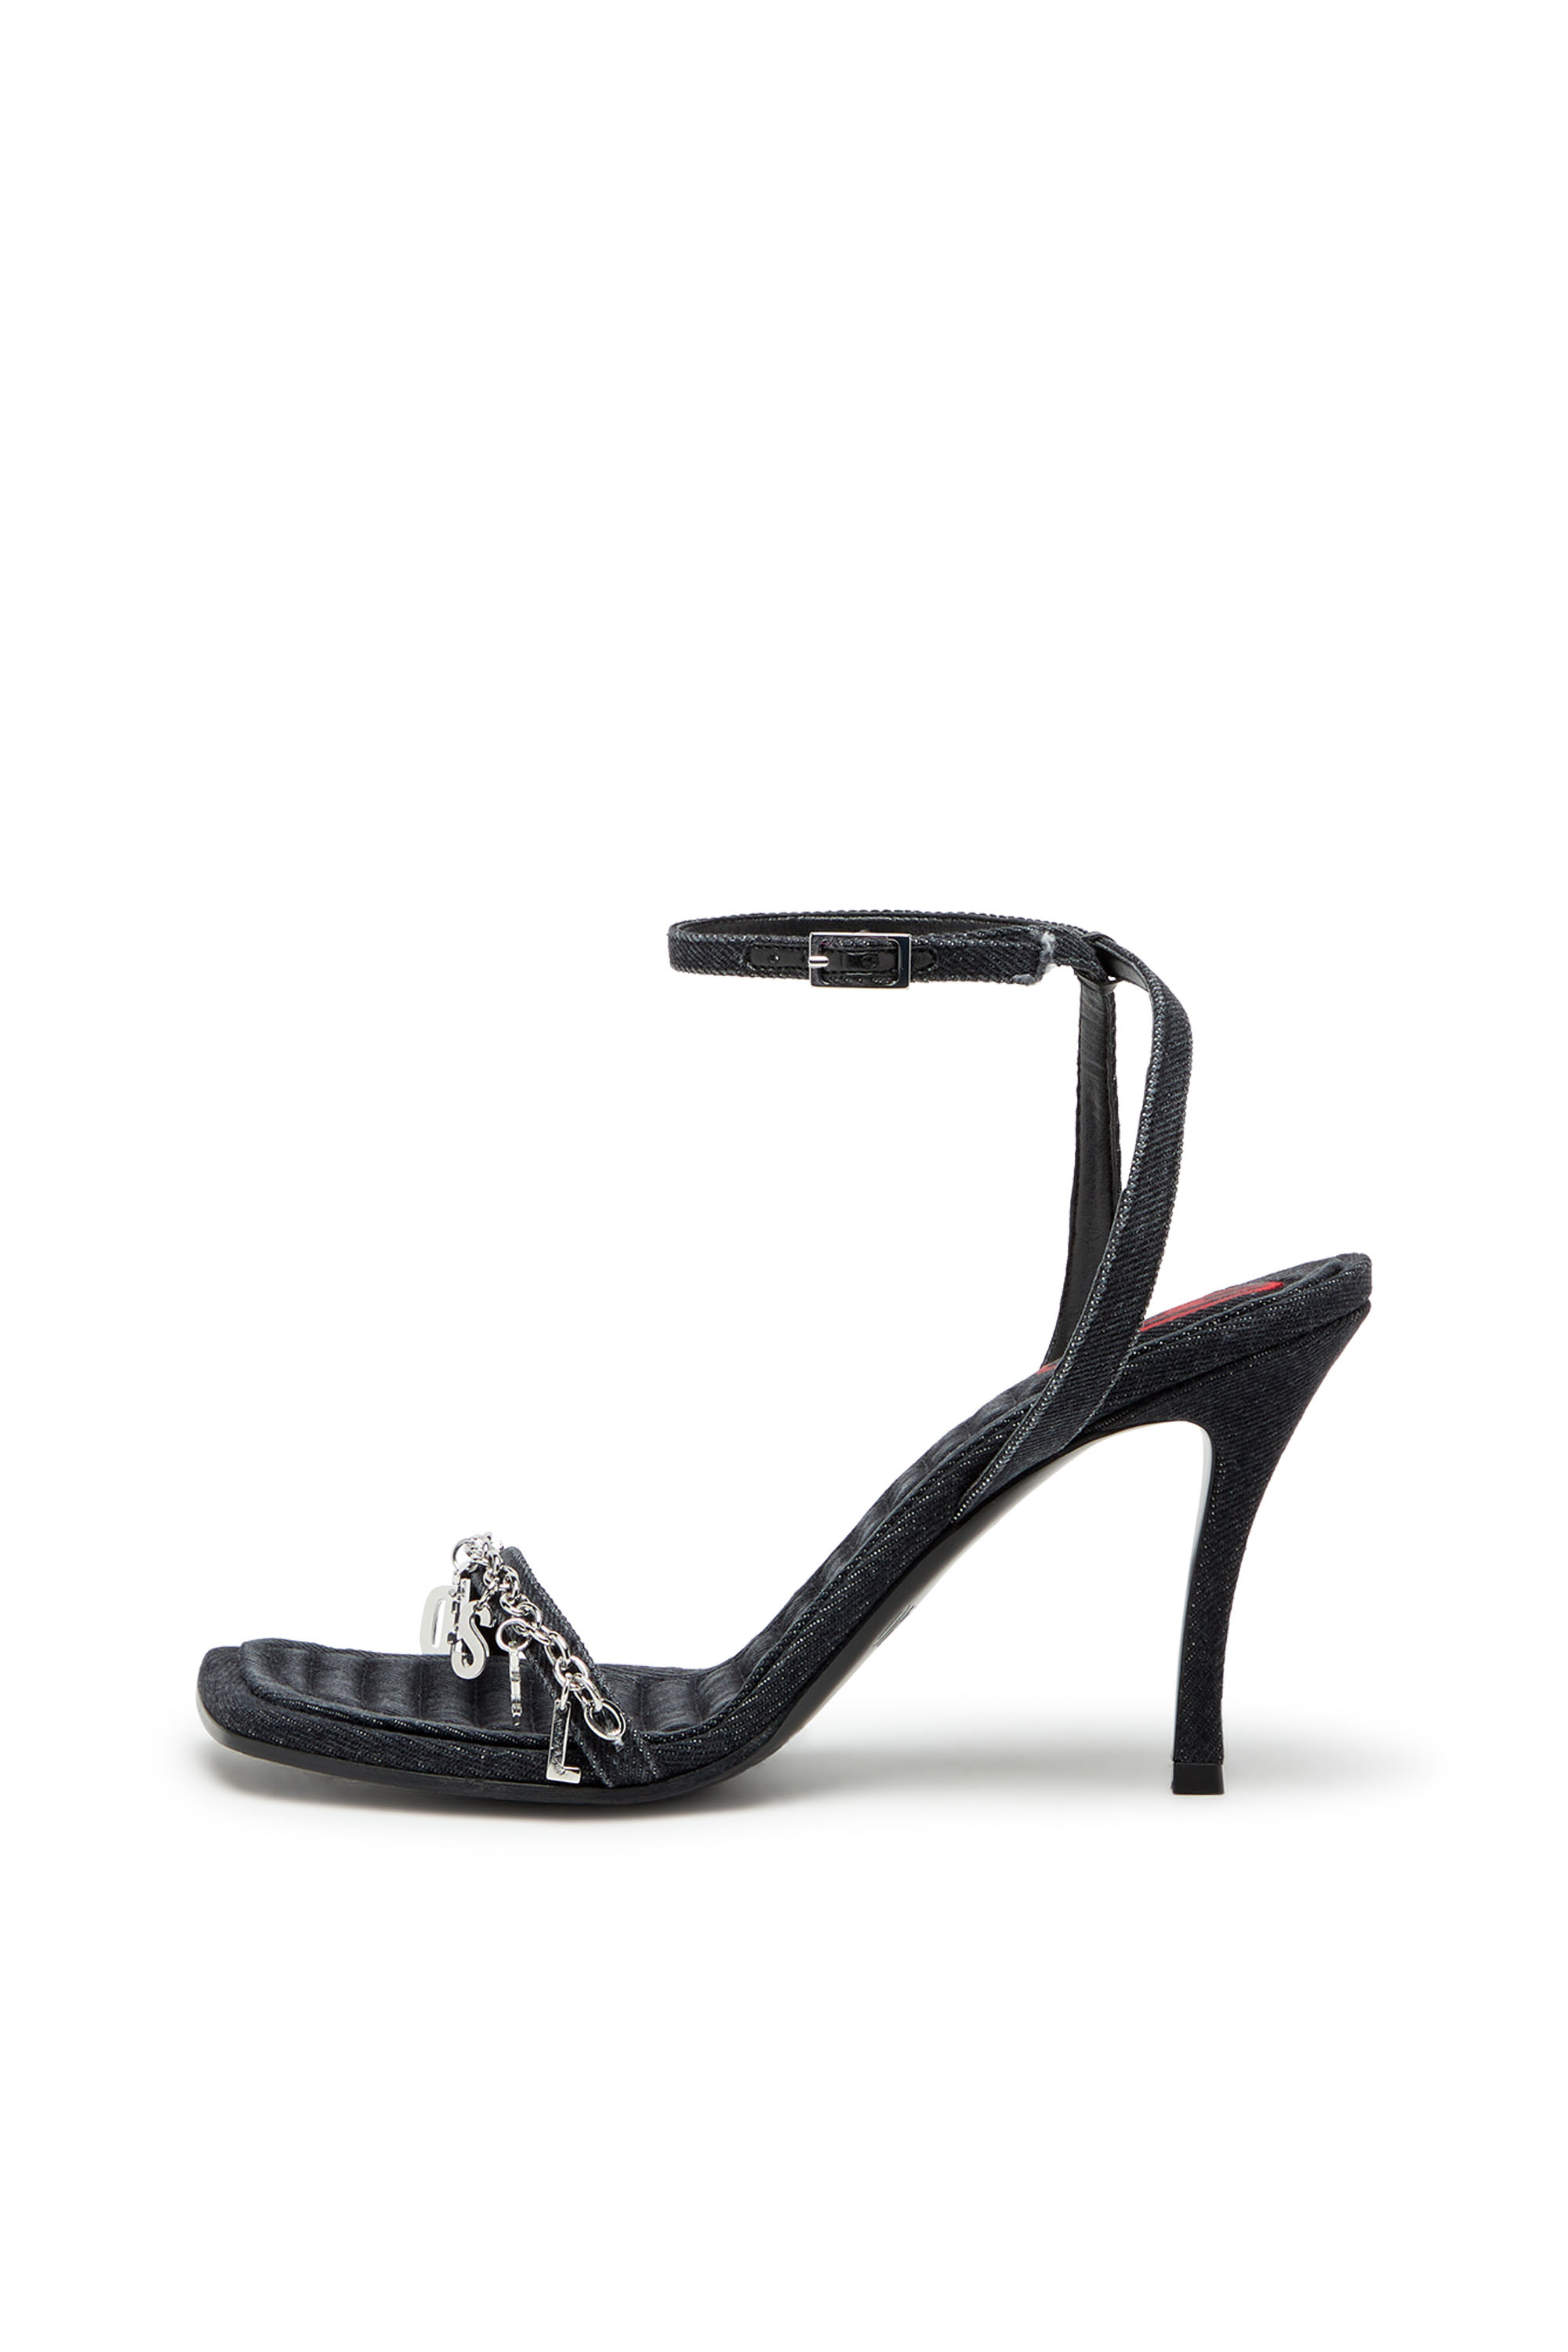 Diesel - D-VINA SDL, Woman D-Vina Sdl Sandals - Denim sandals with Diesel charms in Black - Image 6